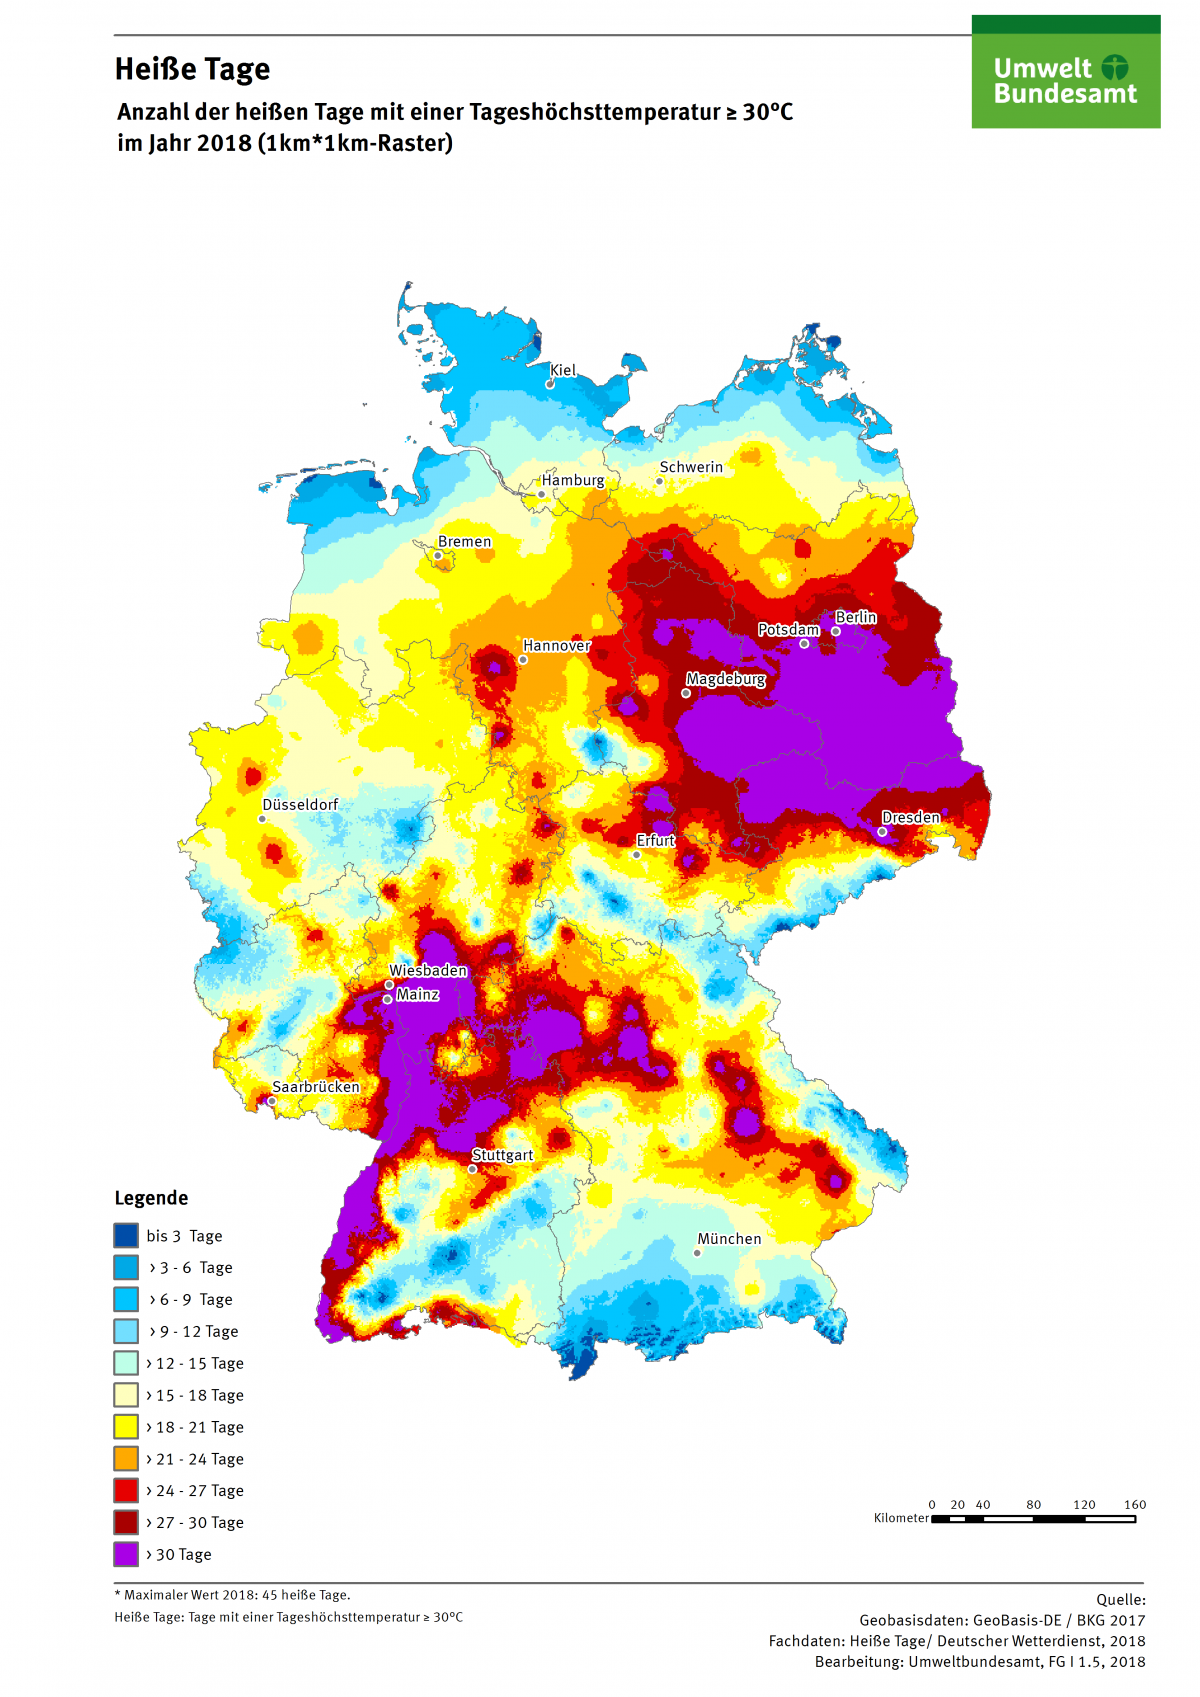 Die Karte zeigt die Anzahl Heißer Tage in Deutschland im Jahr 2018. Maximal gab es in diesem Jahr 45 Heiße Tage in Deutschland.